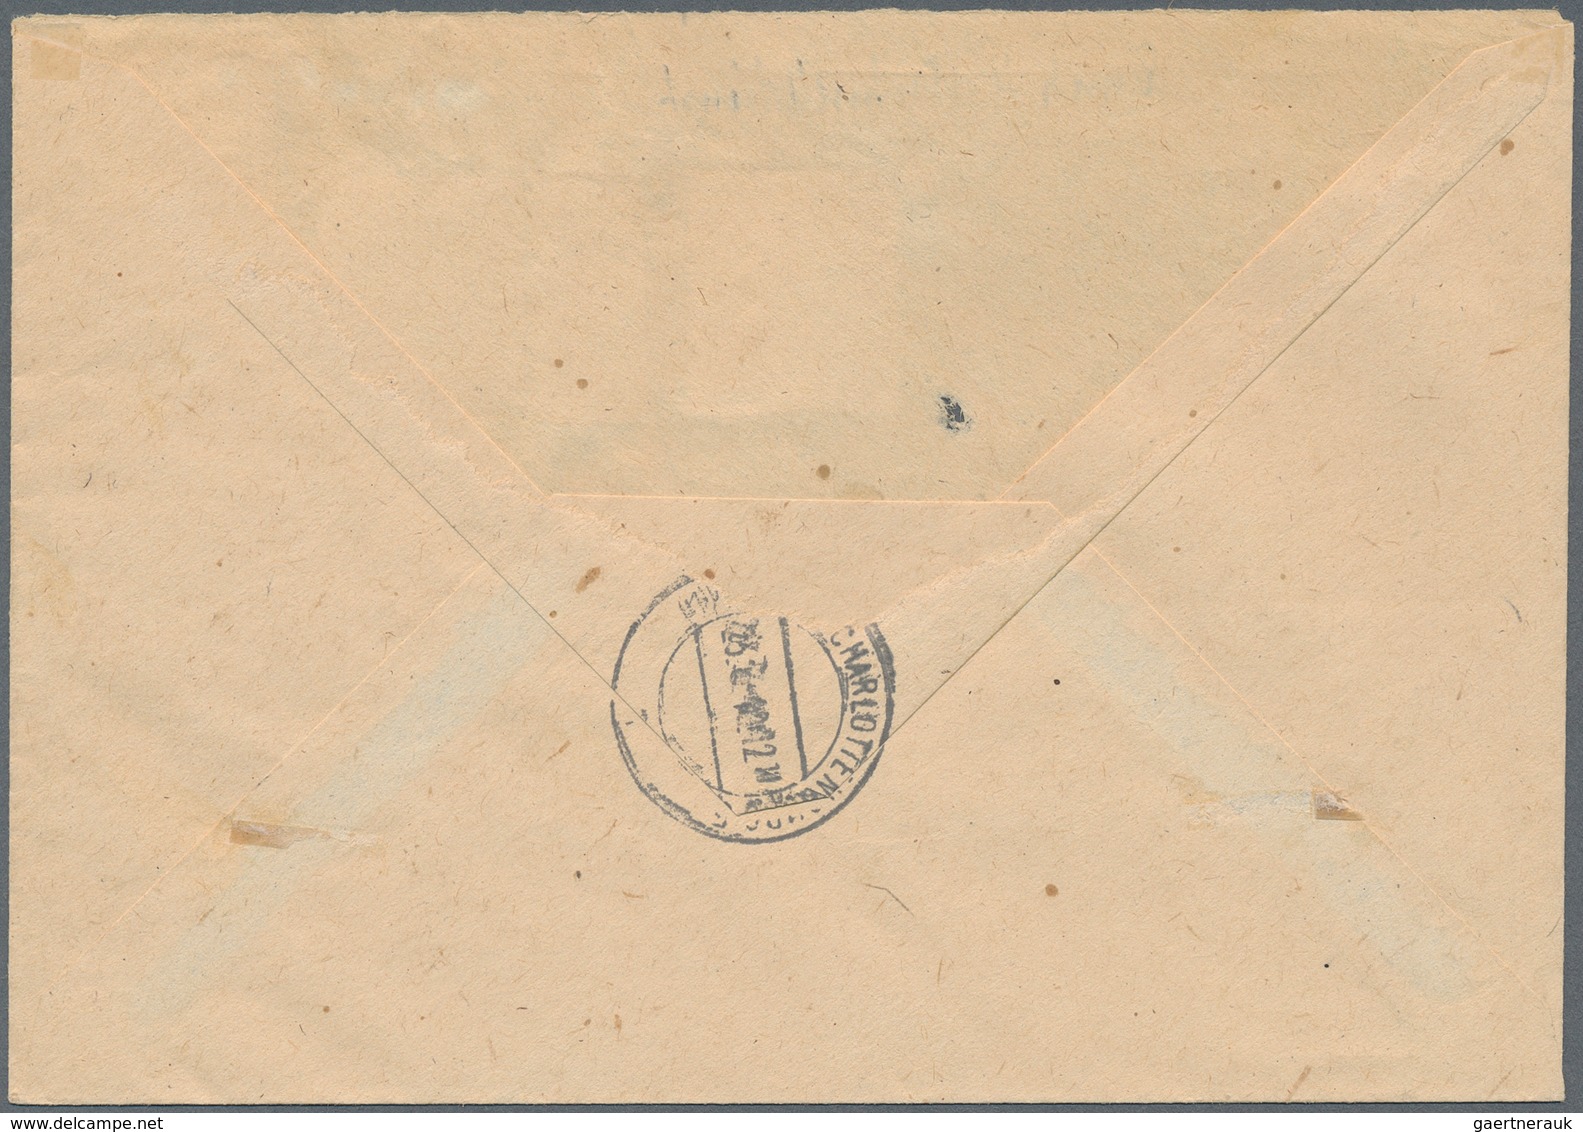 Berlin - Postschnelldienst: 6 U. 84 Pf. Schwarz Mit 8 Pf. Rotaufdruck Sowie Paar 1 Pf Bauten Zusamme - Briefe U. Dokumente